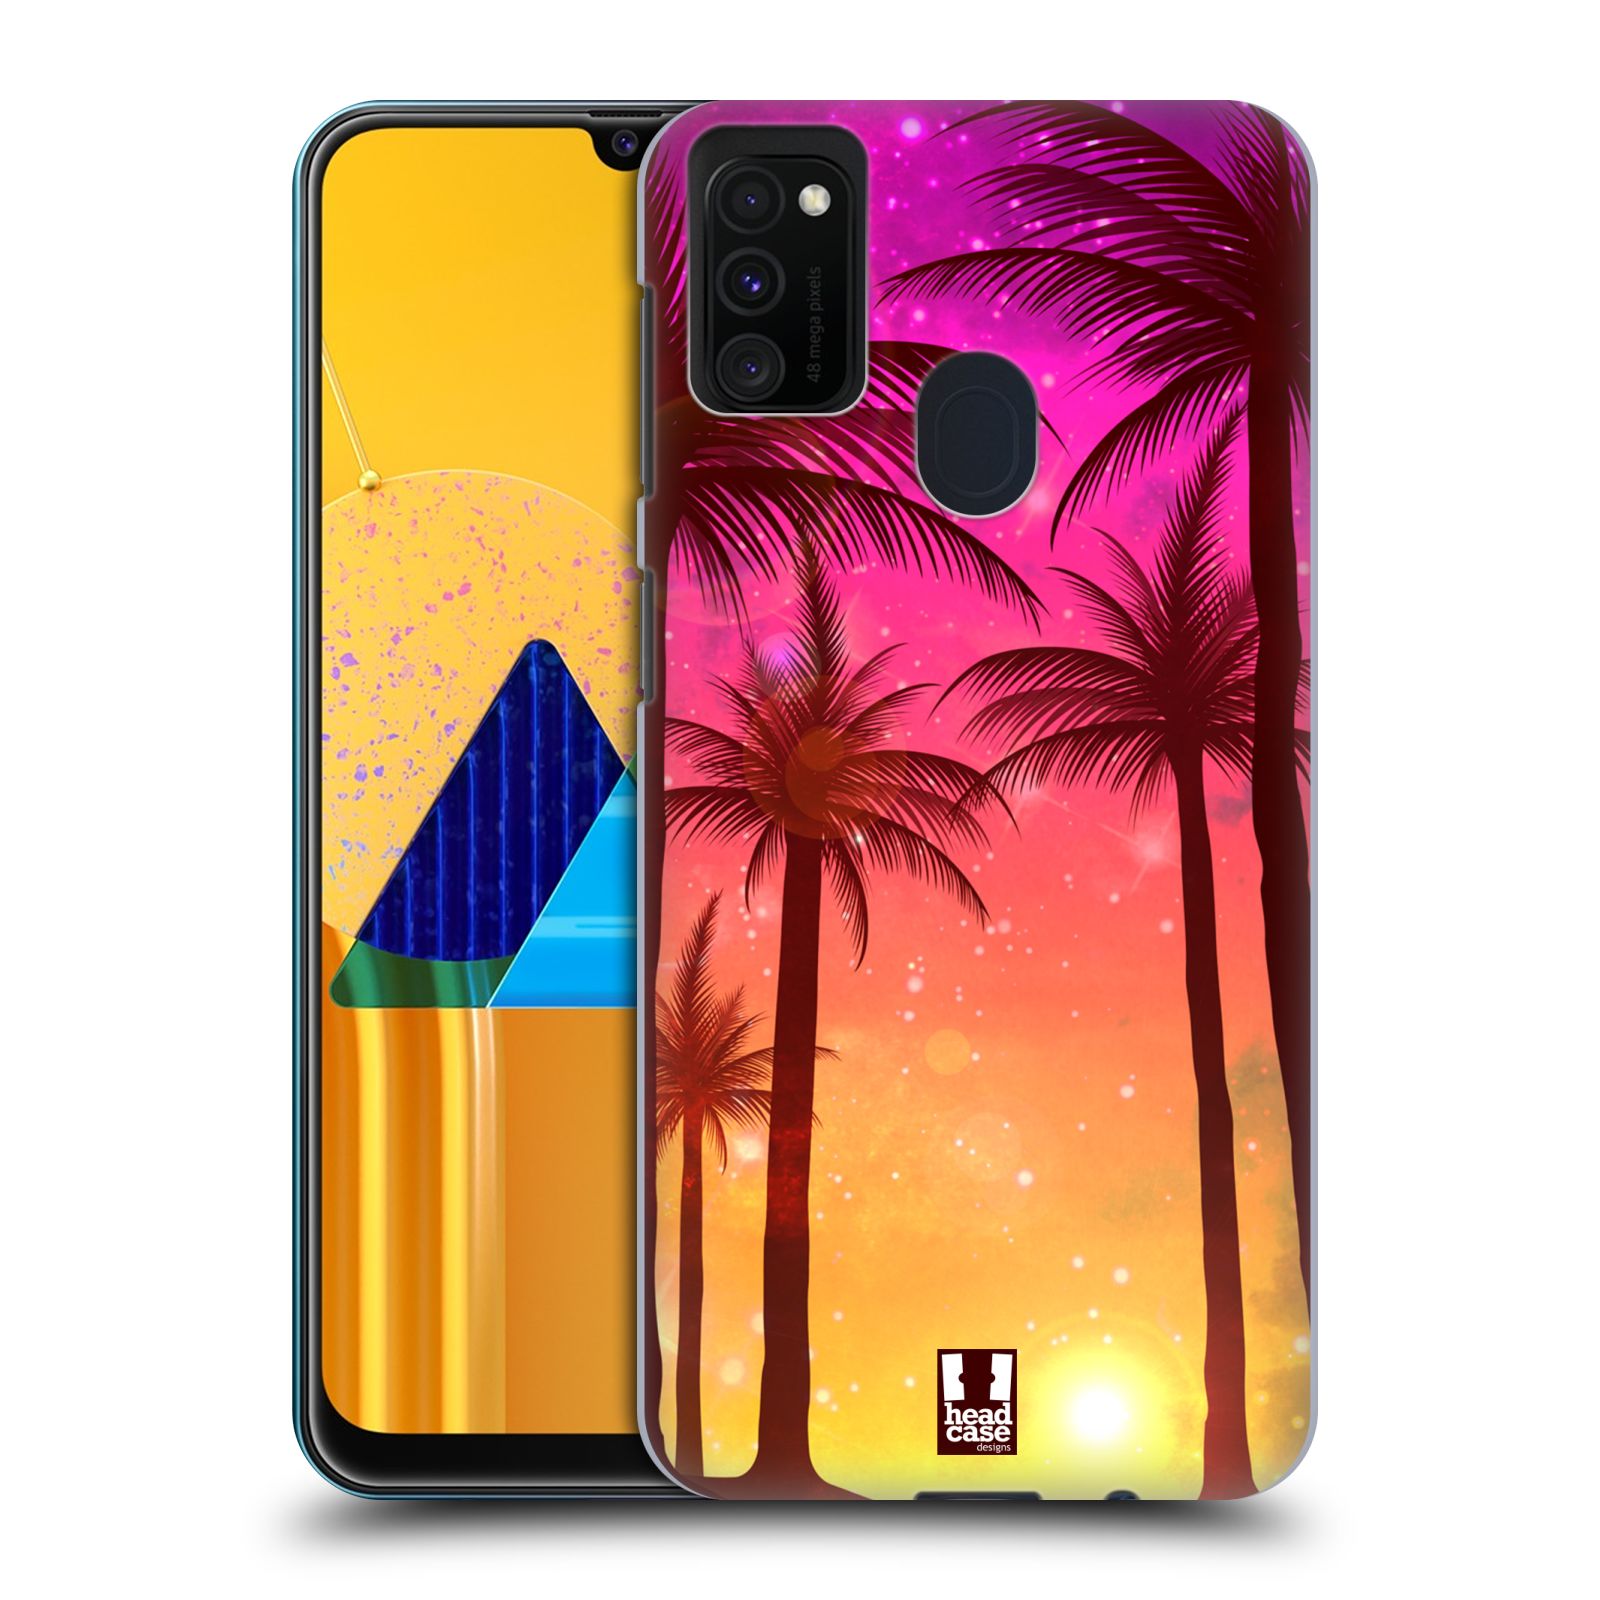 Plastový obal HEAD CASE na mobil Samsung Galaxy M30s vzor Kreslený motiv silueta moře a palmy RŮŽOVÁ